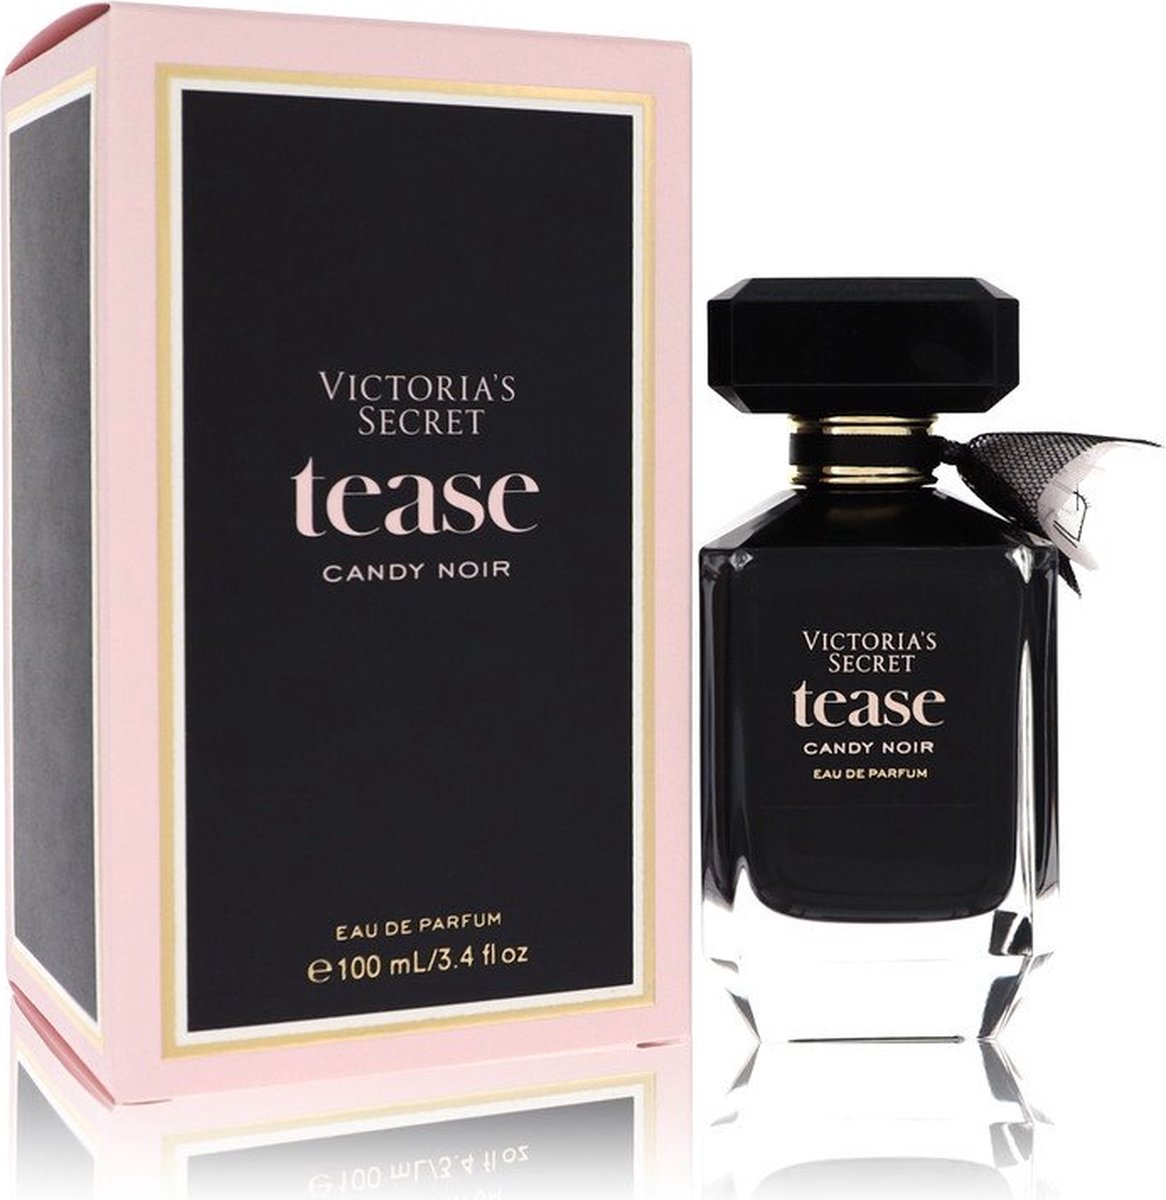 Victoria's Secret Tease Candy Noir Eau De Parfum Spray 100 Ml For Women